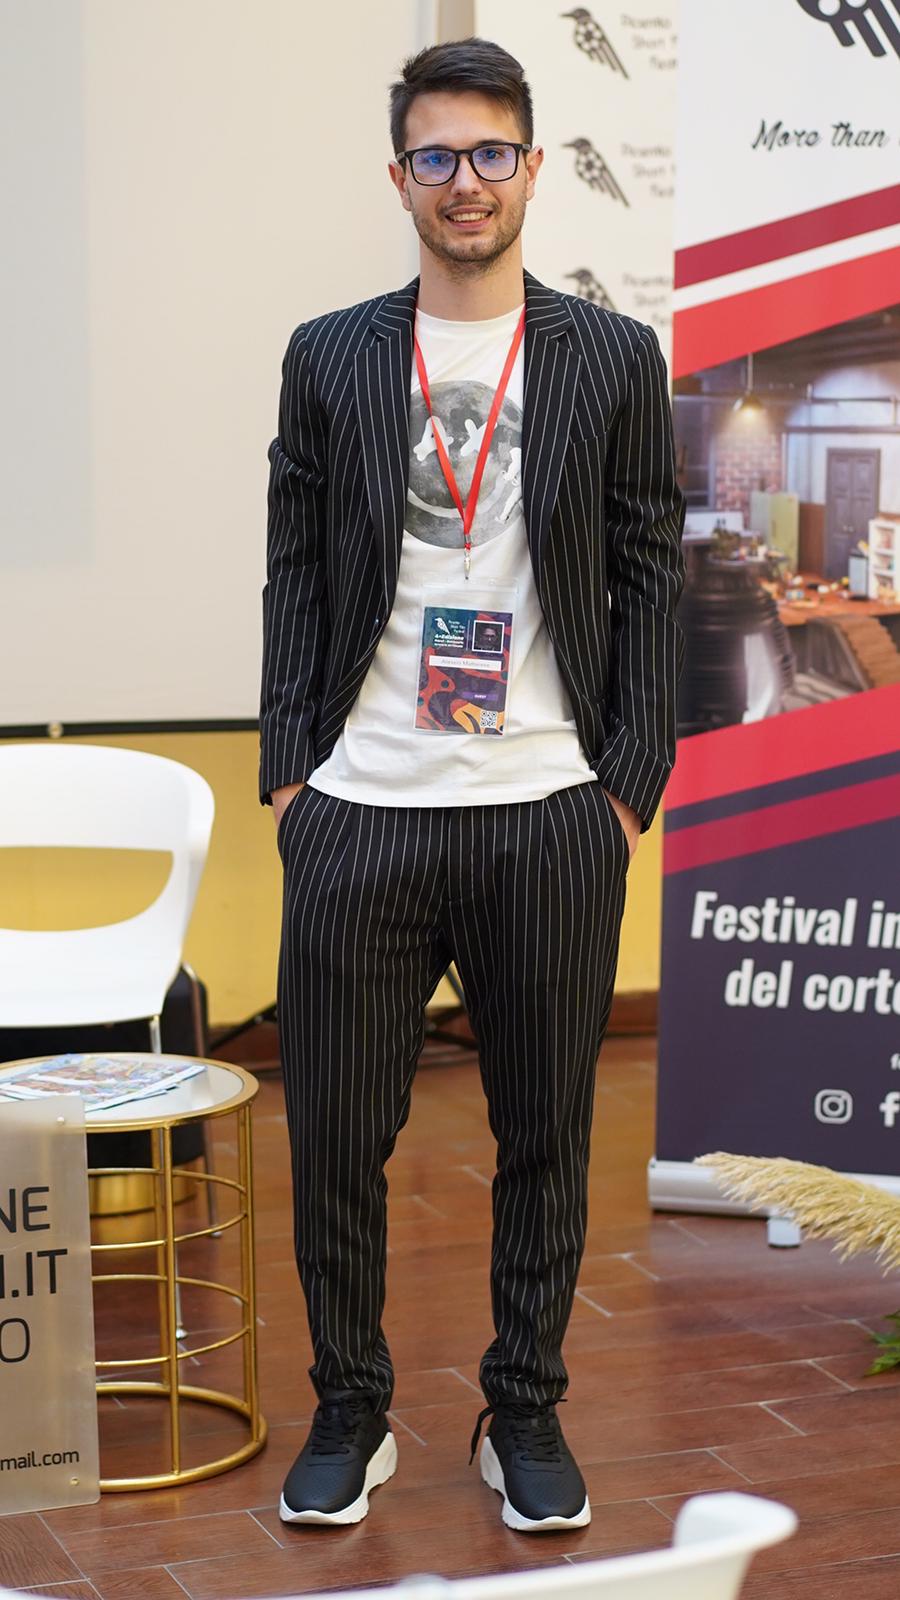 L’INTERVISTA – Parola ad Alessio Mattarese, noto imprenditore digitale